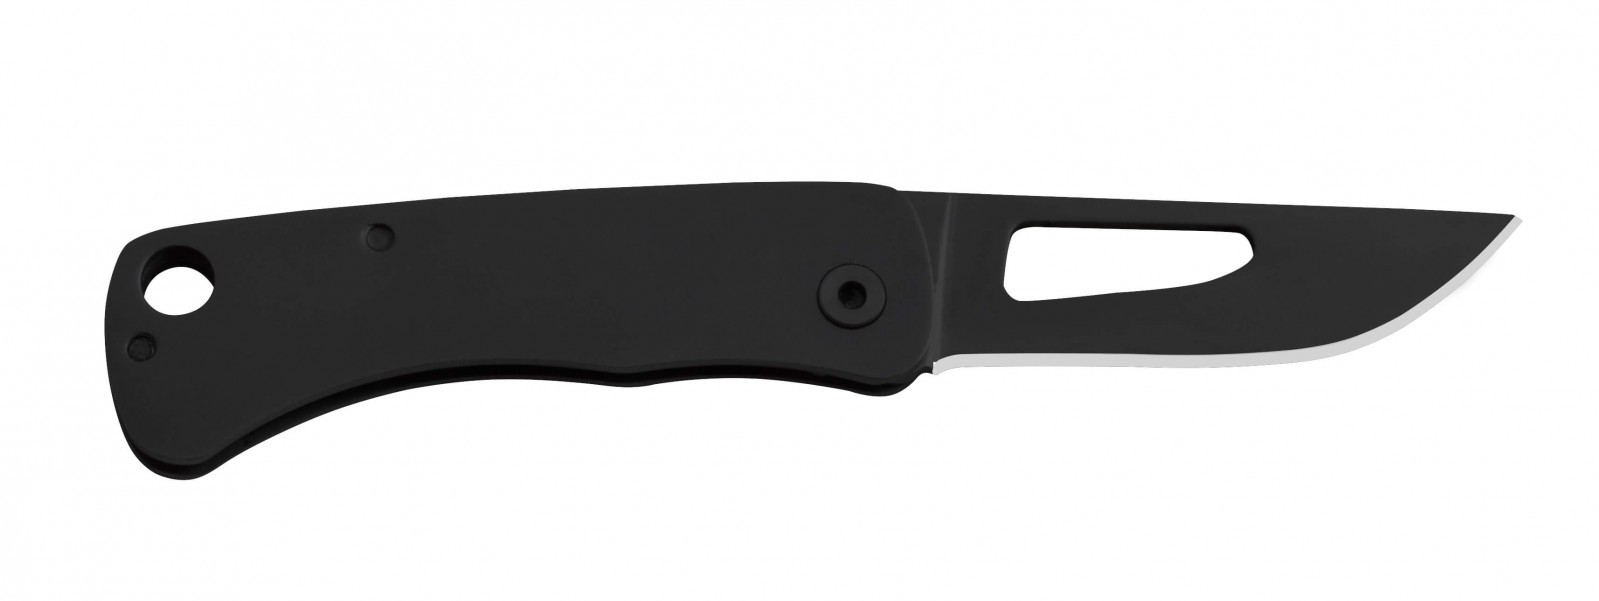 Складной нож Centi I - SOG CE1002, сталь 3Cr13MoV, рукоять нержавеющая сталь, чёрный